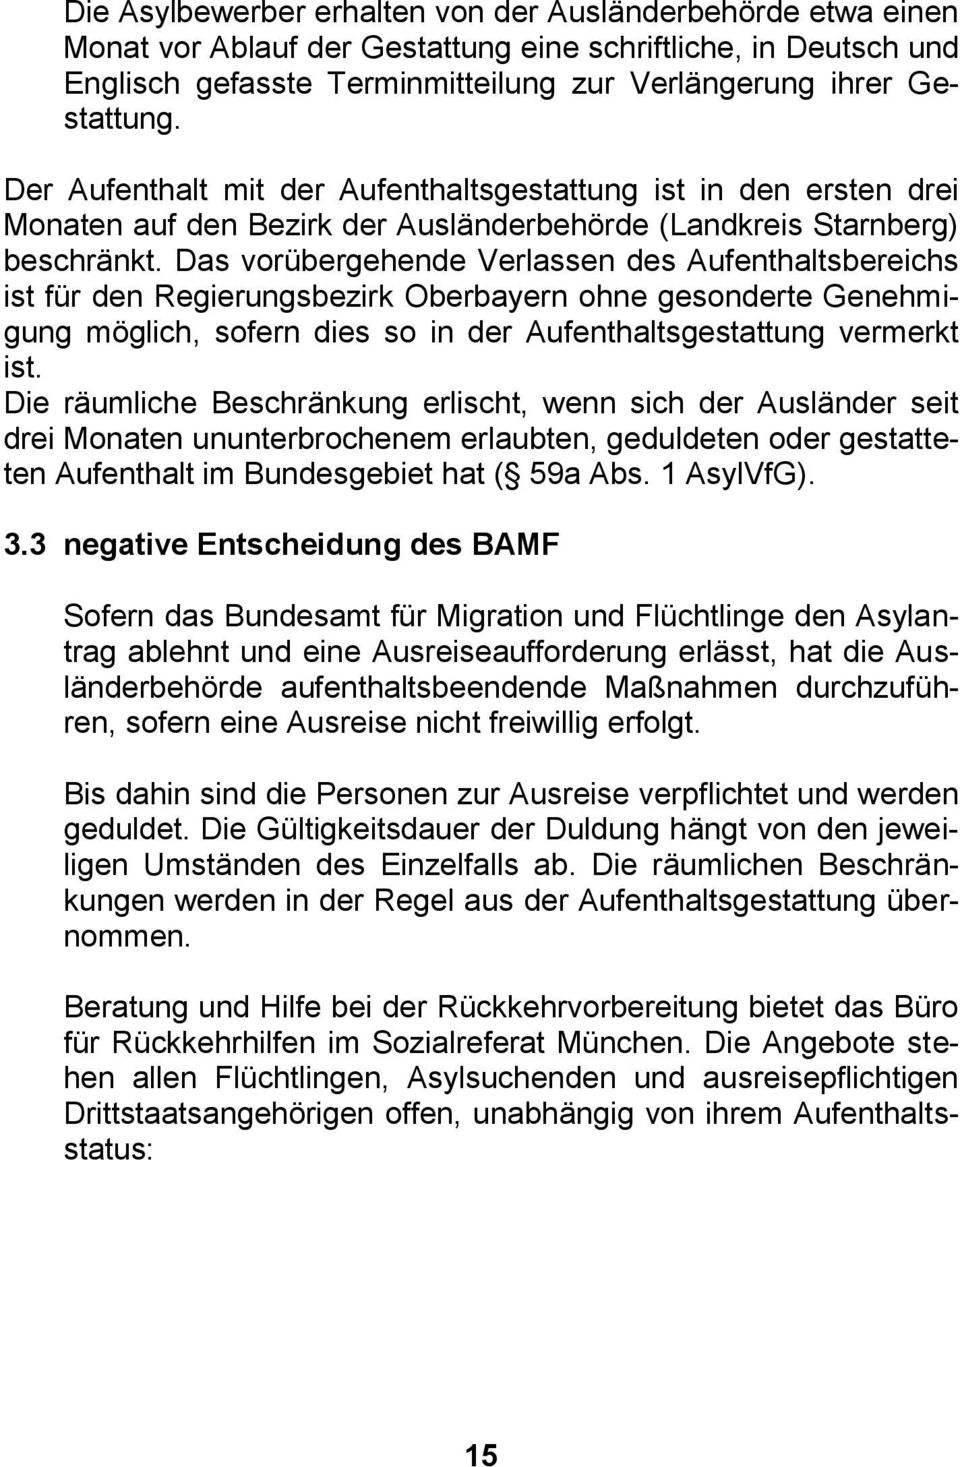 Das vorübergehende Verlassen des Aufenthaltsbereichs ist für den Regierungsbezirk Oberbayern ohne gesonderte Genehmigung möglich, sofern dies so in der Aufenthaltsgestattung vermerkt ist.